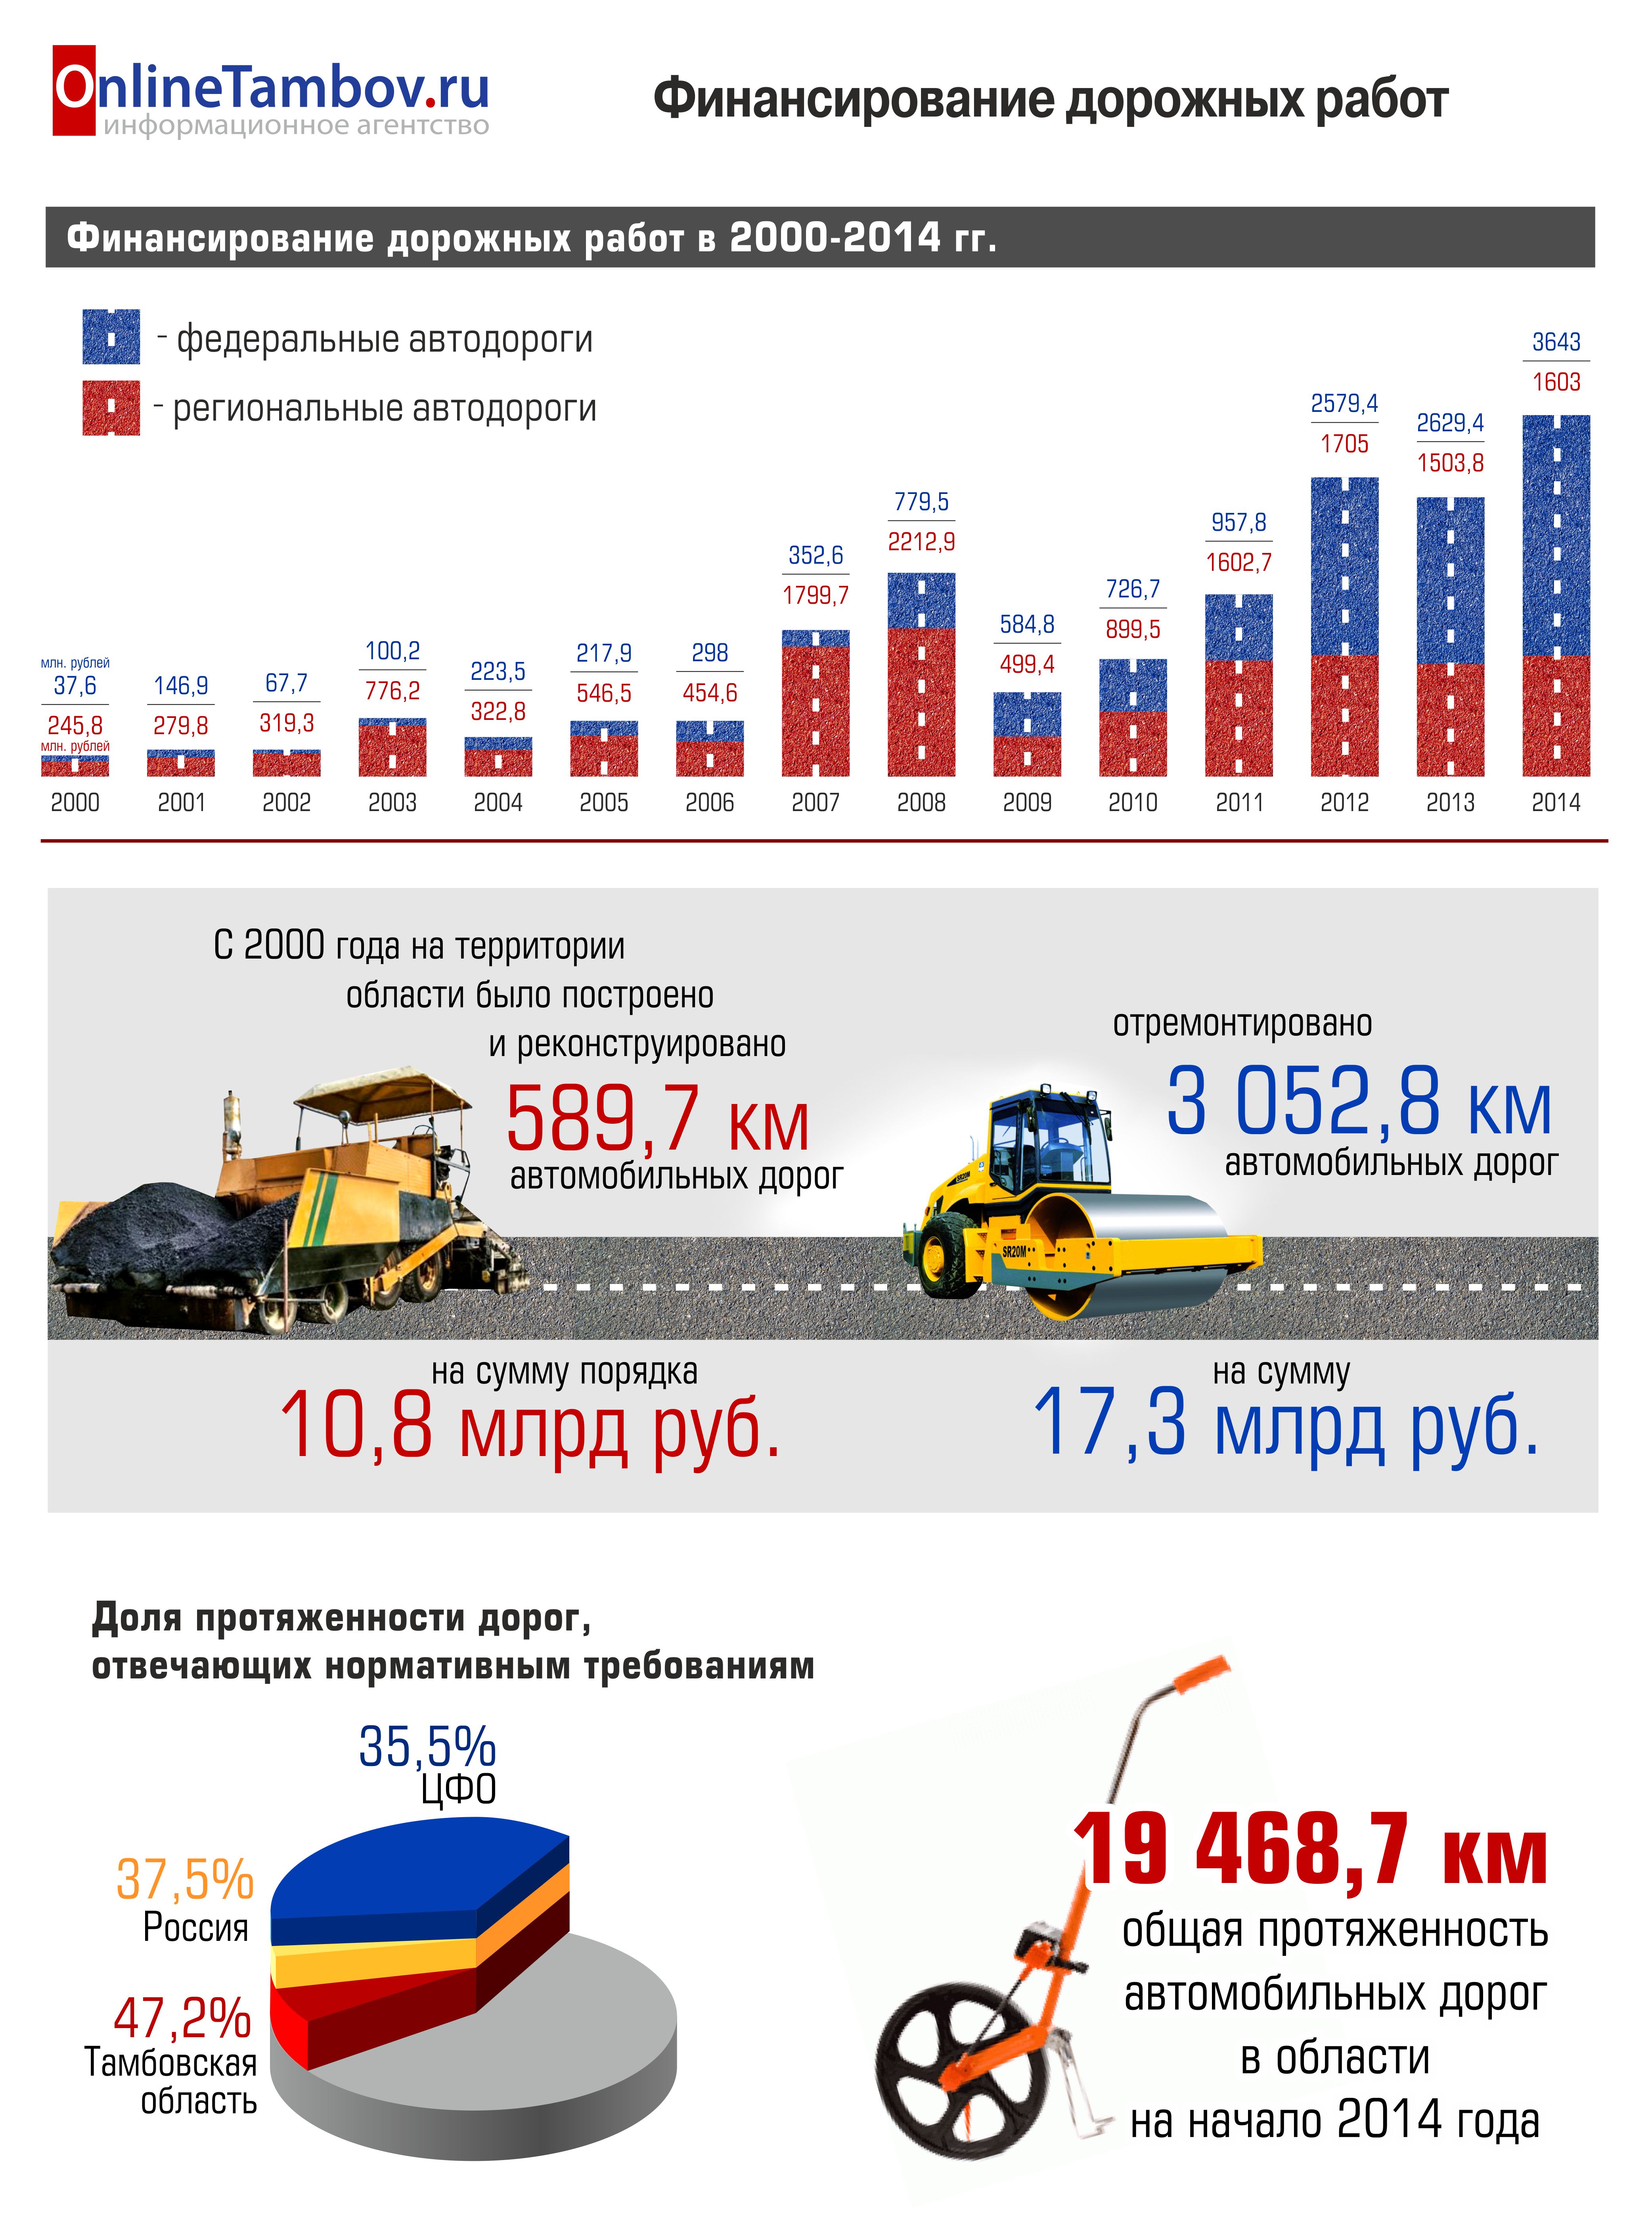 Финансирование дорожных работ в Тамбовской области в 2000-2014 гг.